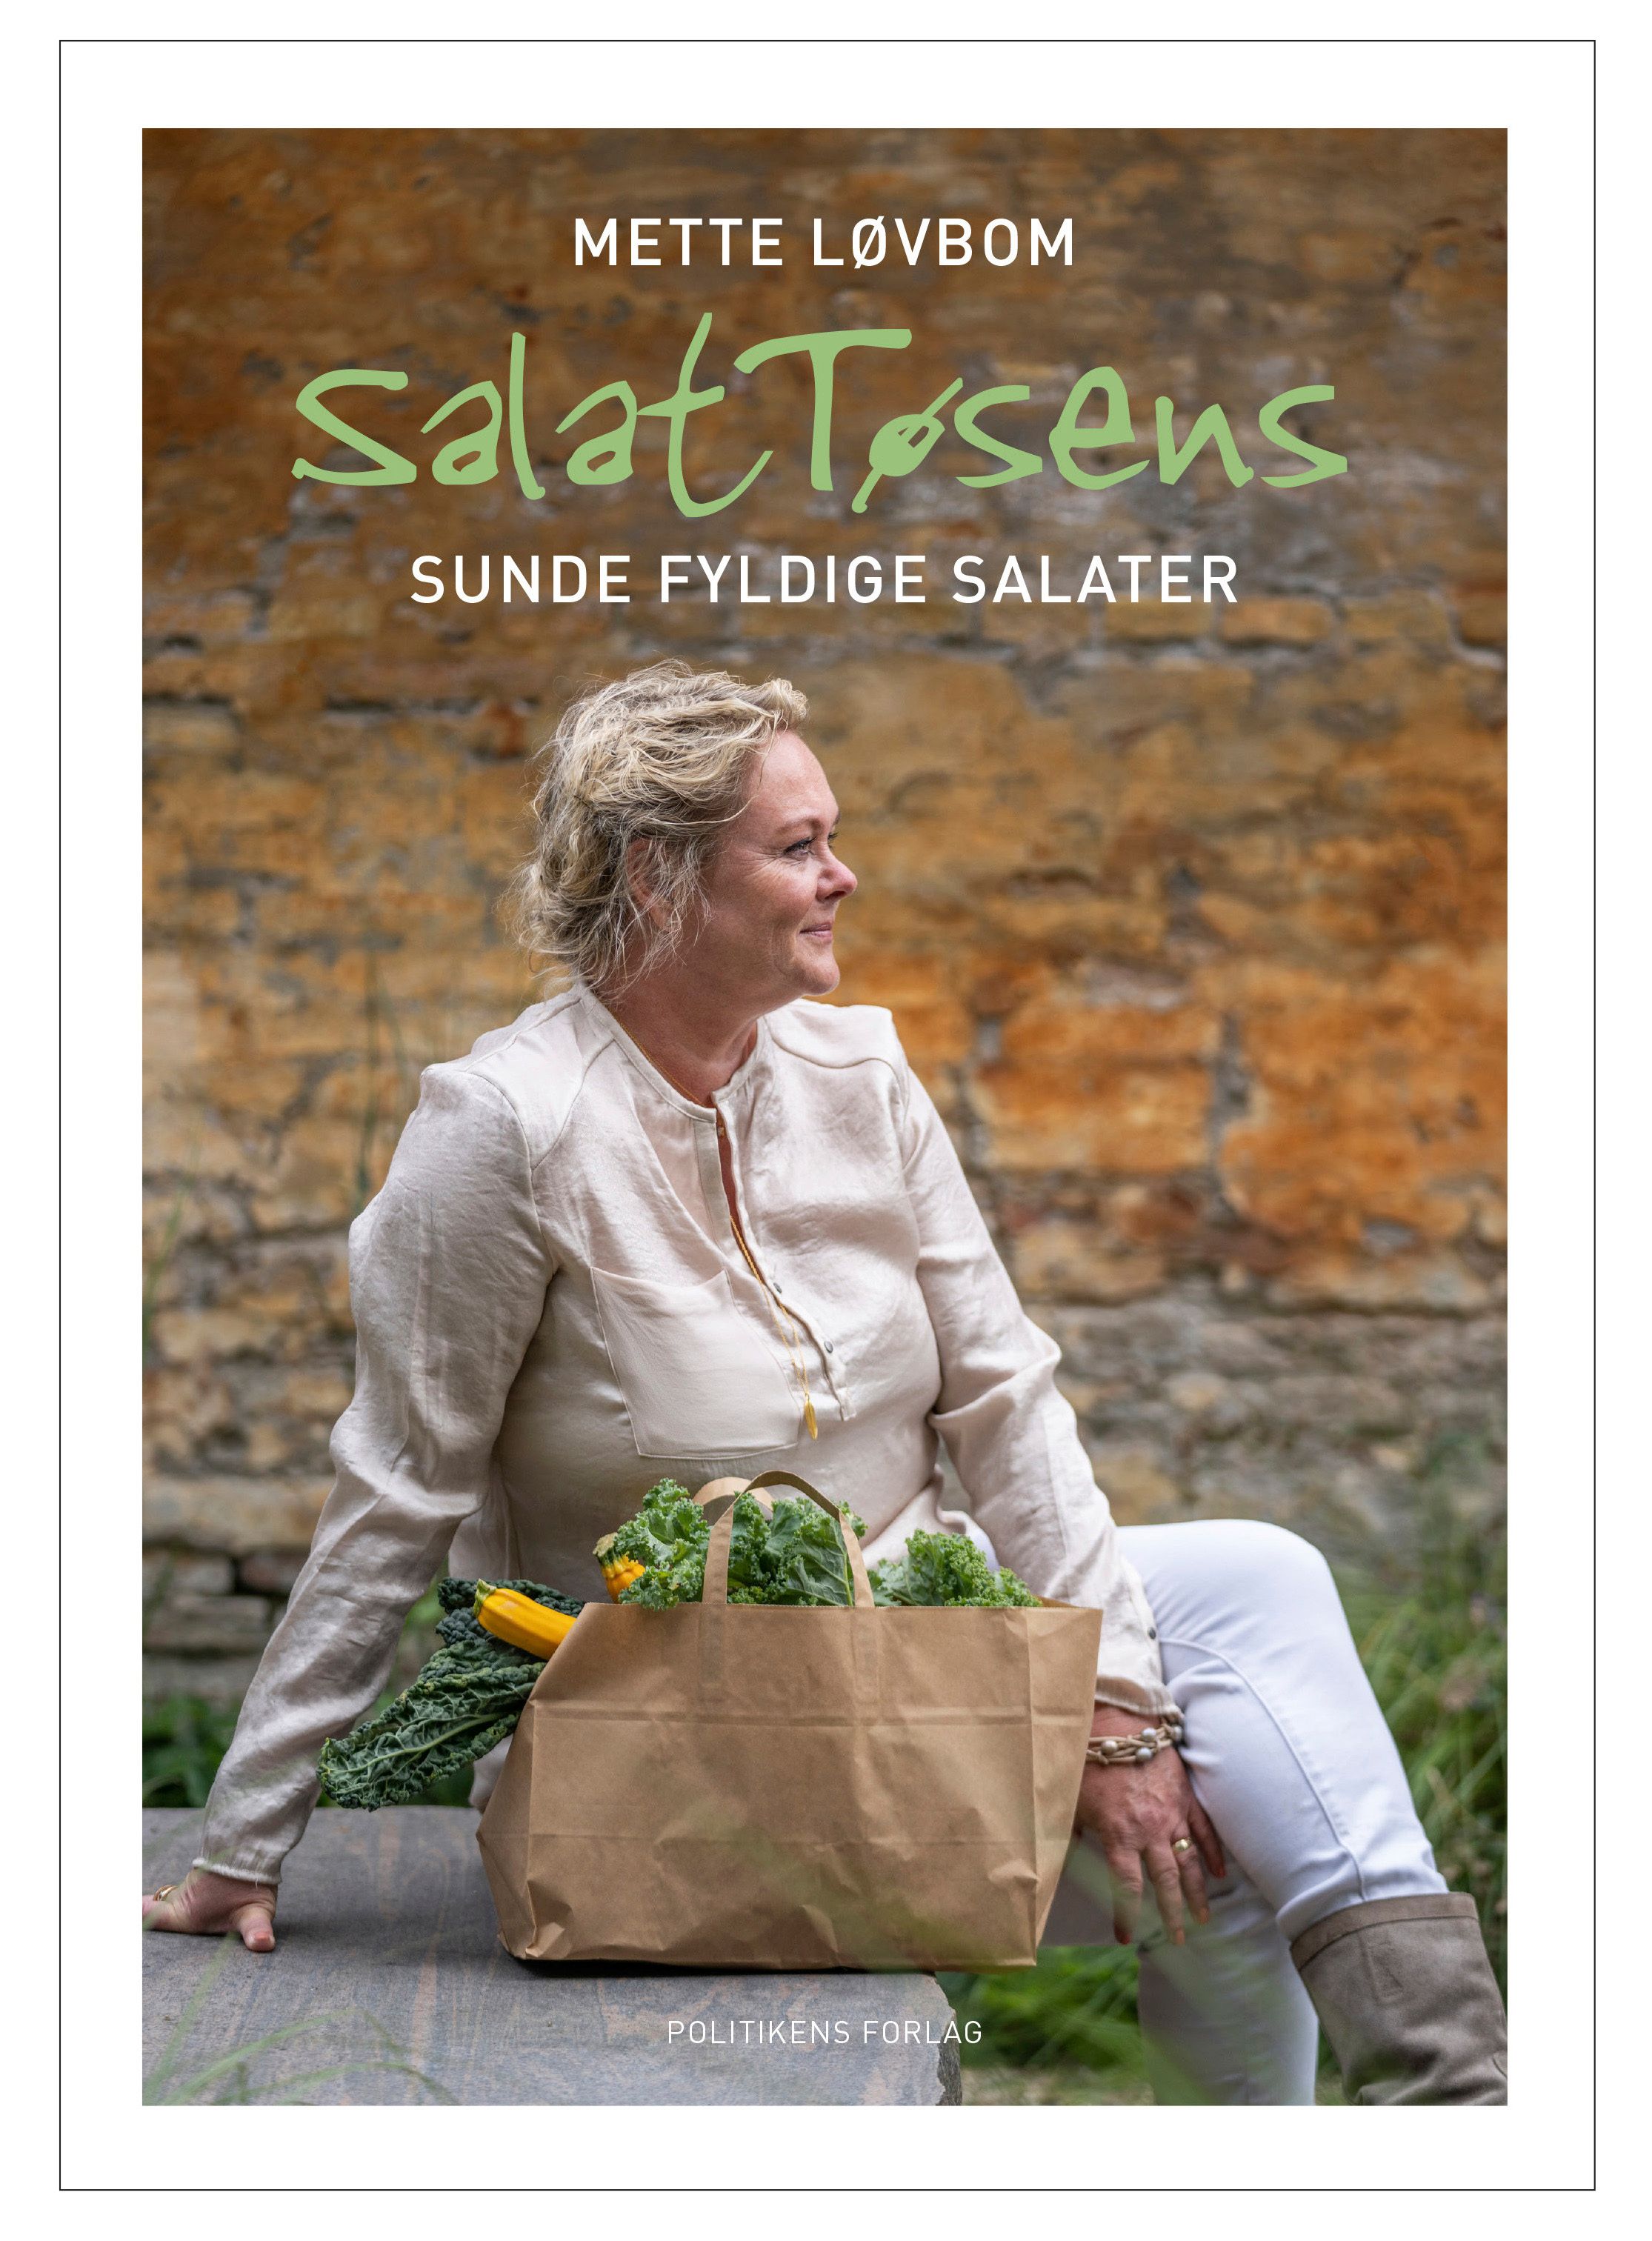 Salattøsens sunde fyldige salater, e-bog af Mette Løvbom